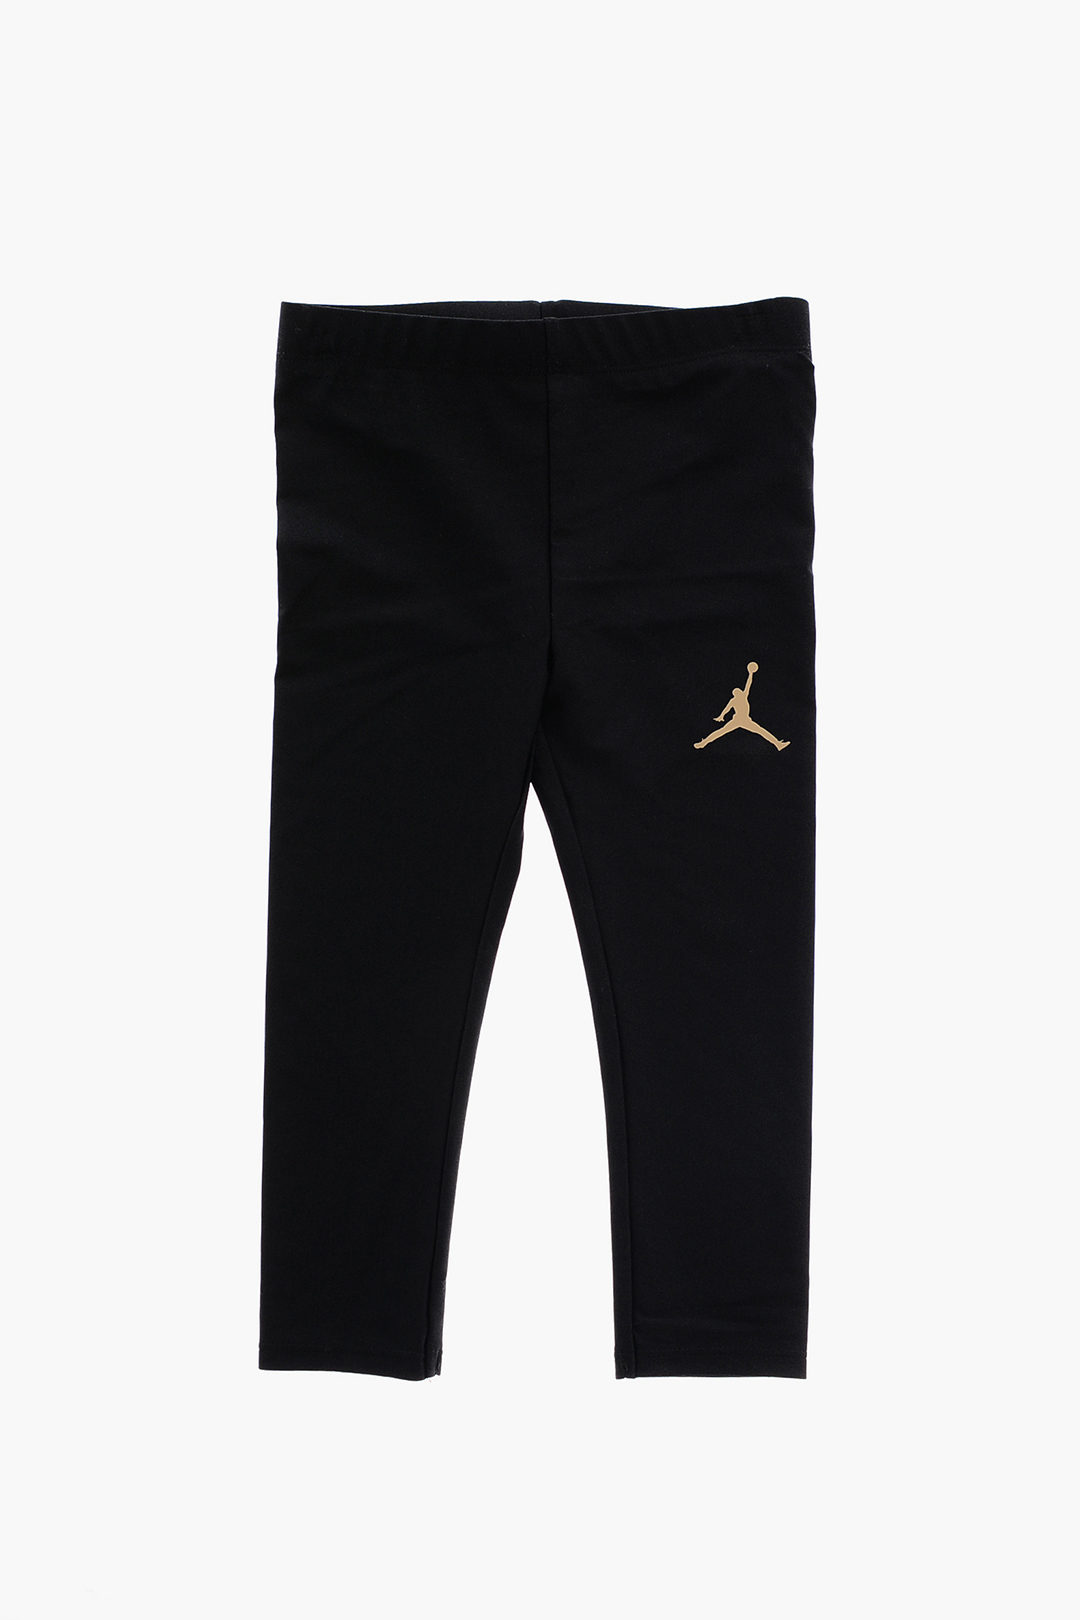 Nike Air Jordans Black leggings Yeezus is a Gemini Jumper